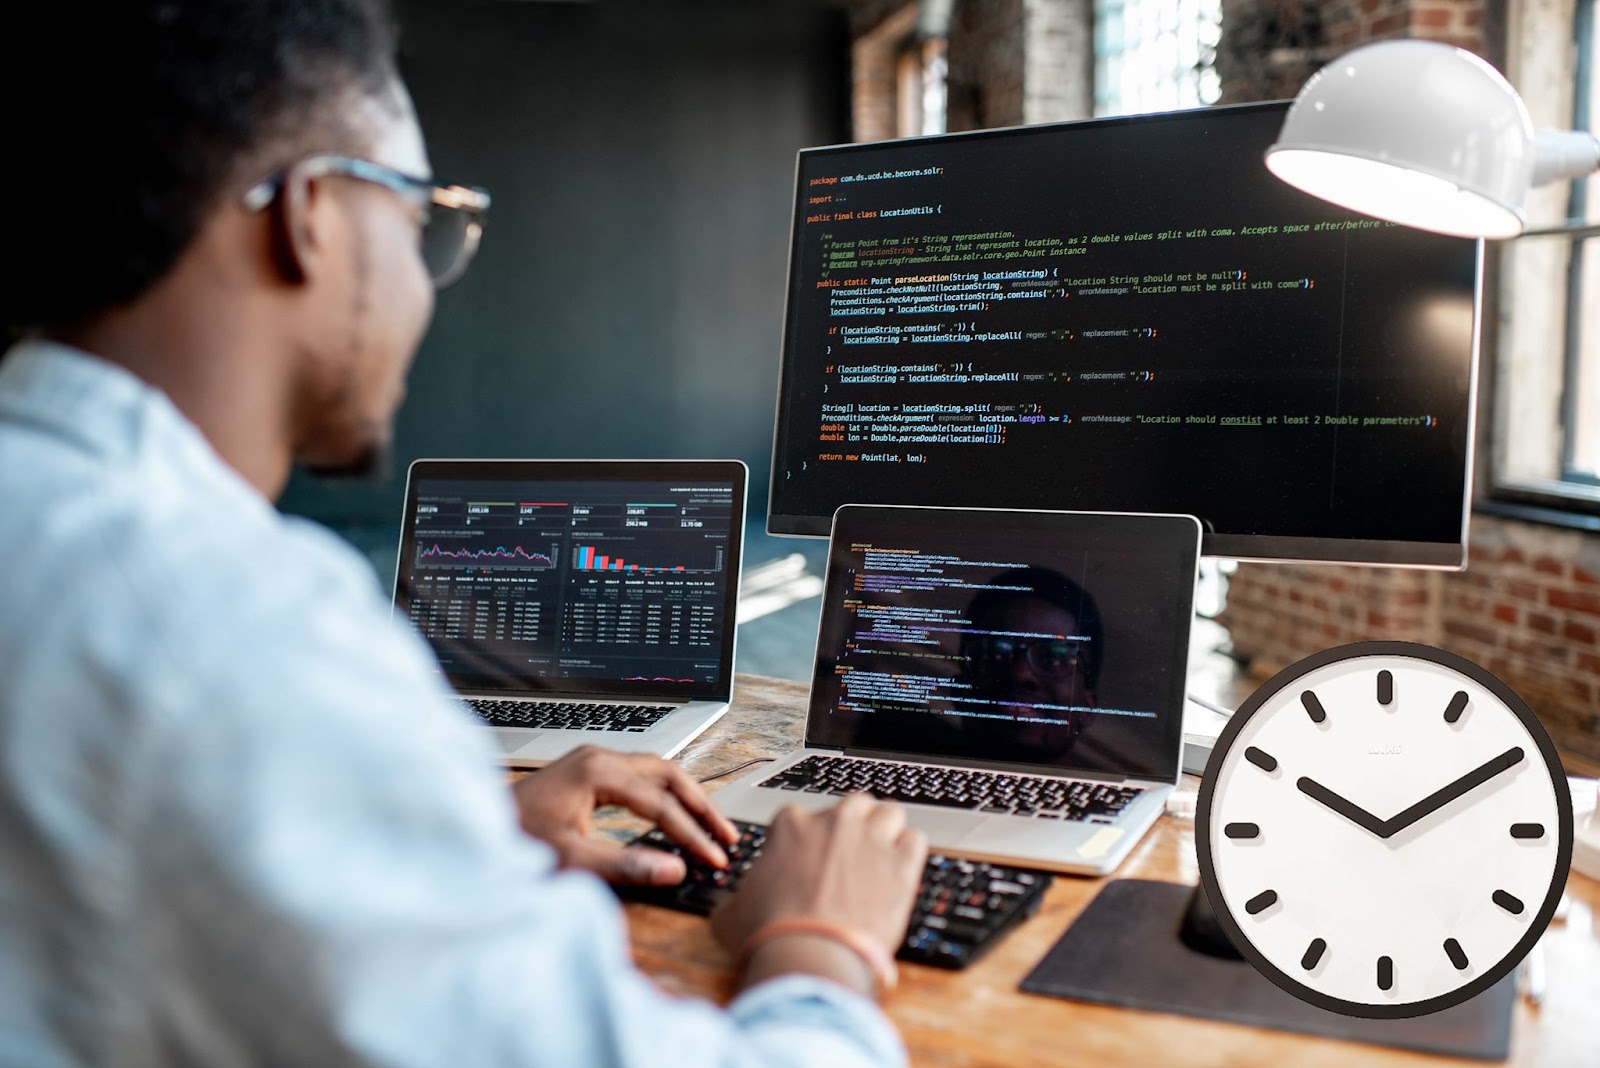 كم تحتاج من الوقت لتعلم لغة برمجة؟